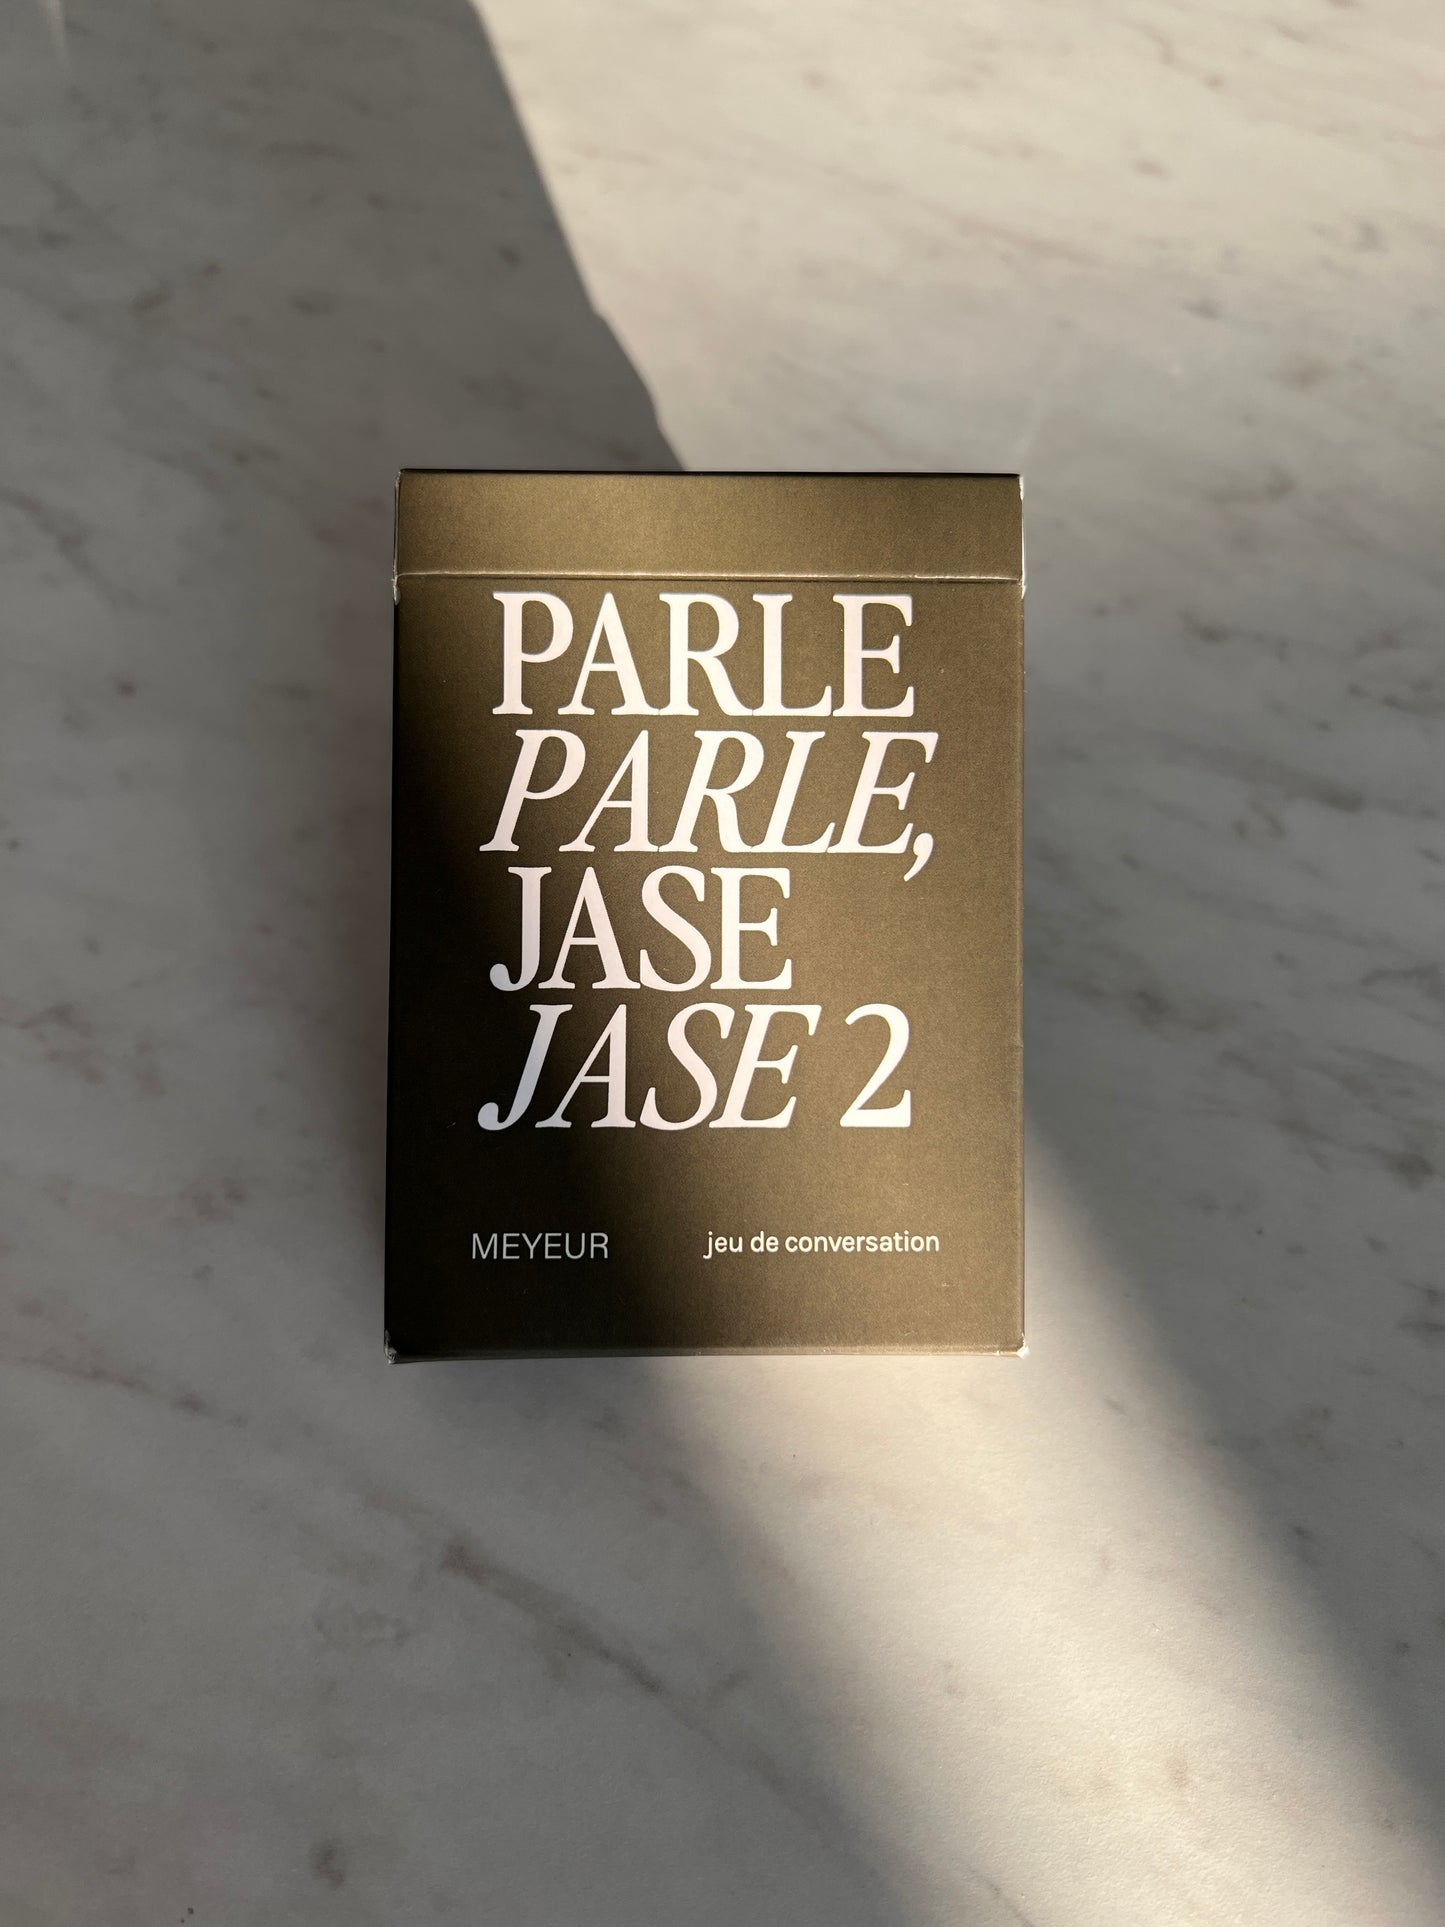 PARLE PARLE JASE JASE 2